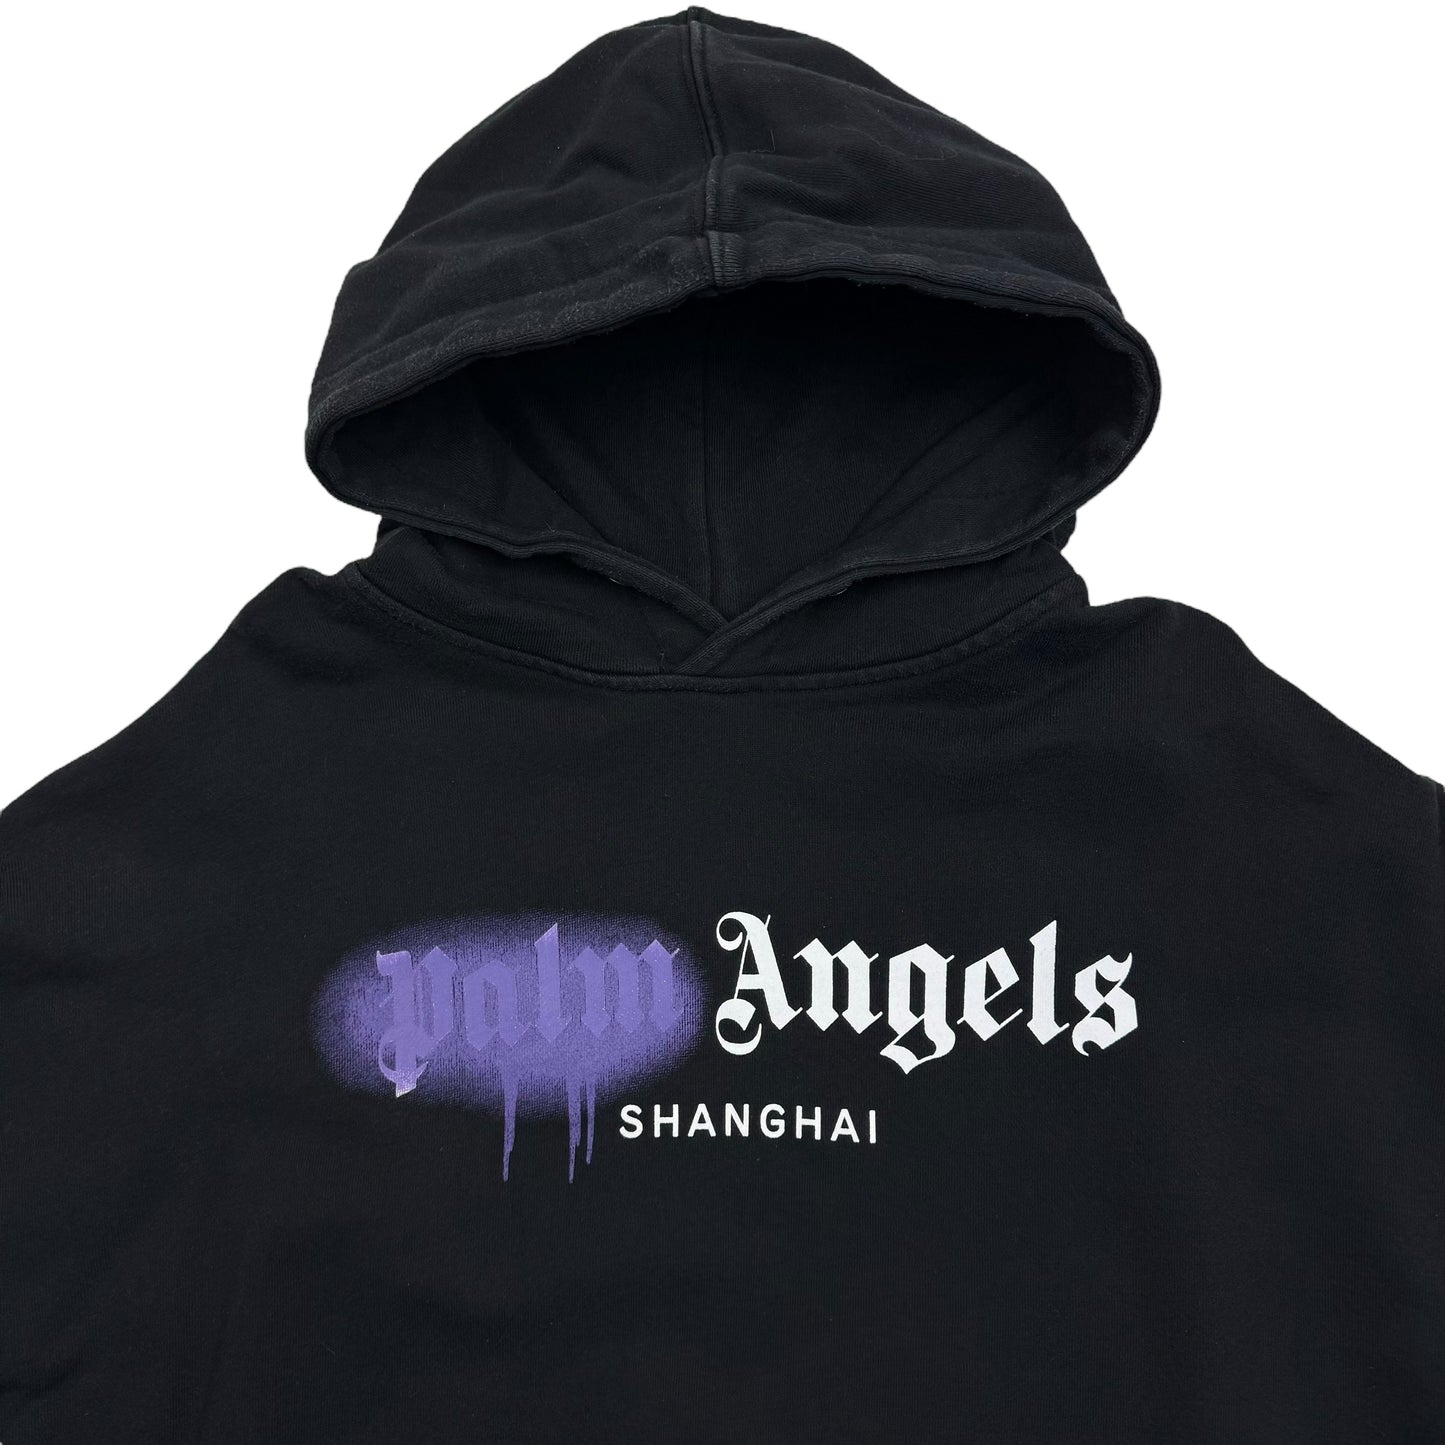 Palm Angels Shanghai Sprayed Hoodie